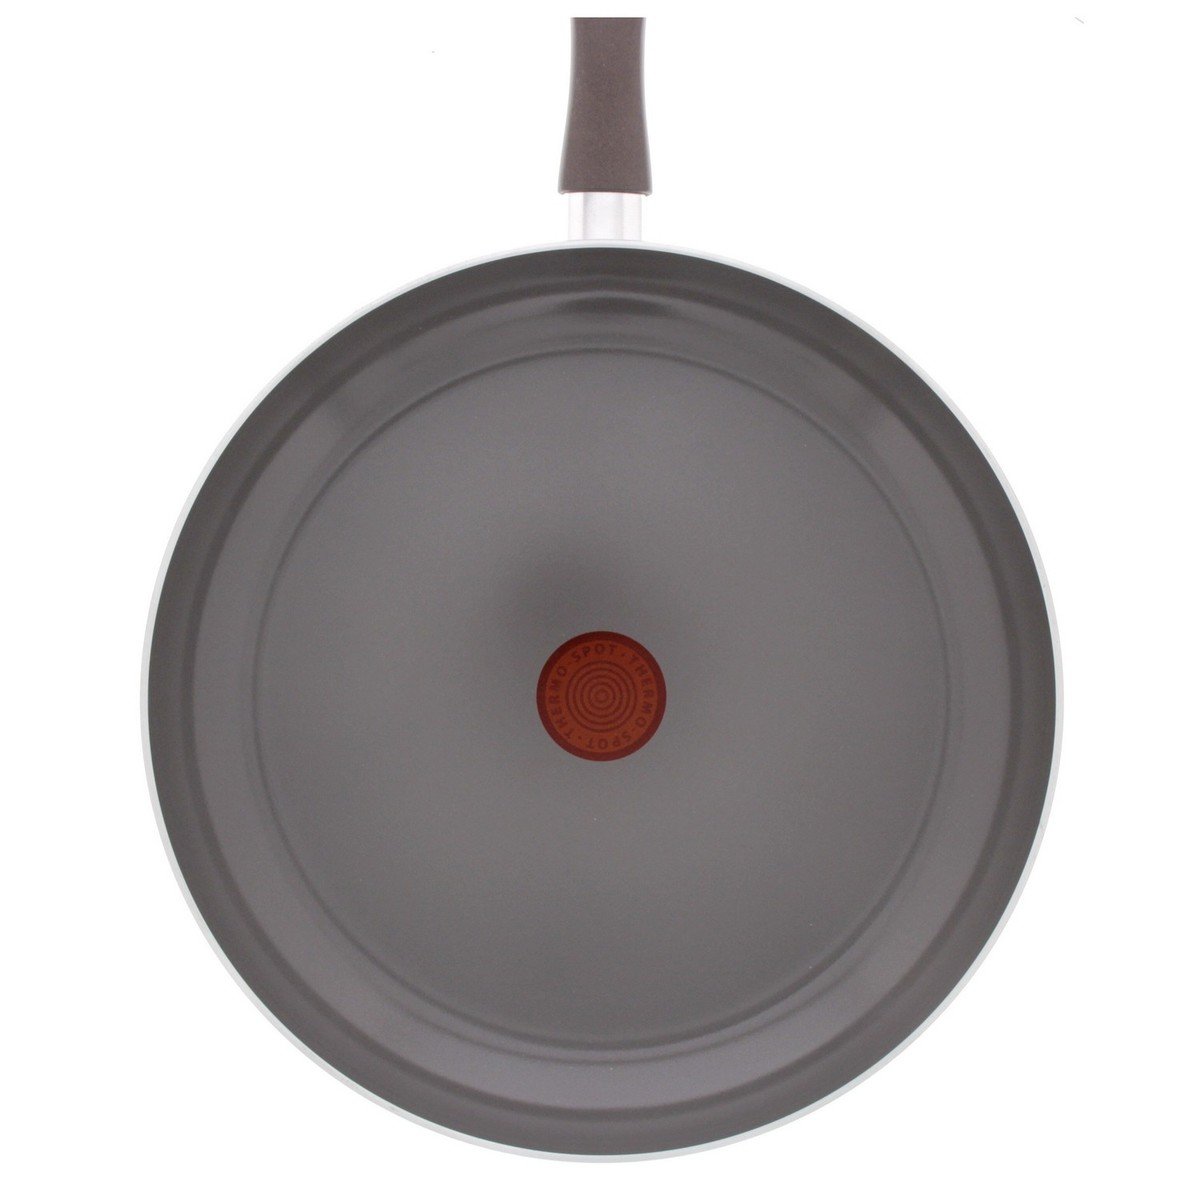 Tefal Ceramic Fry Pan D4210472 24cm